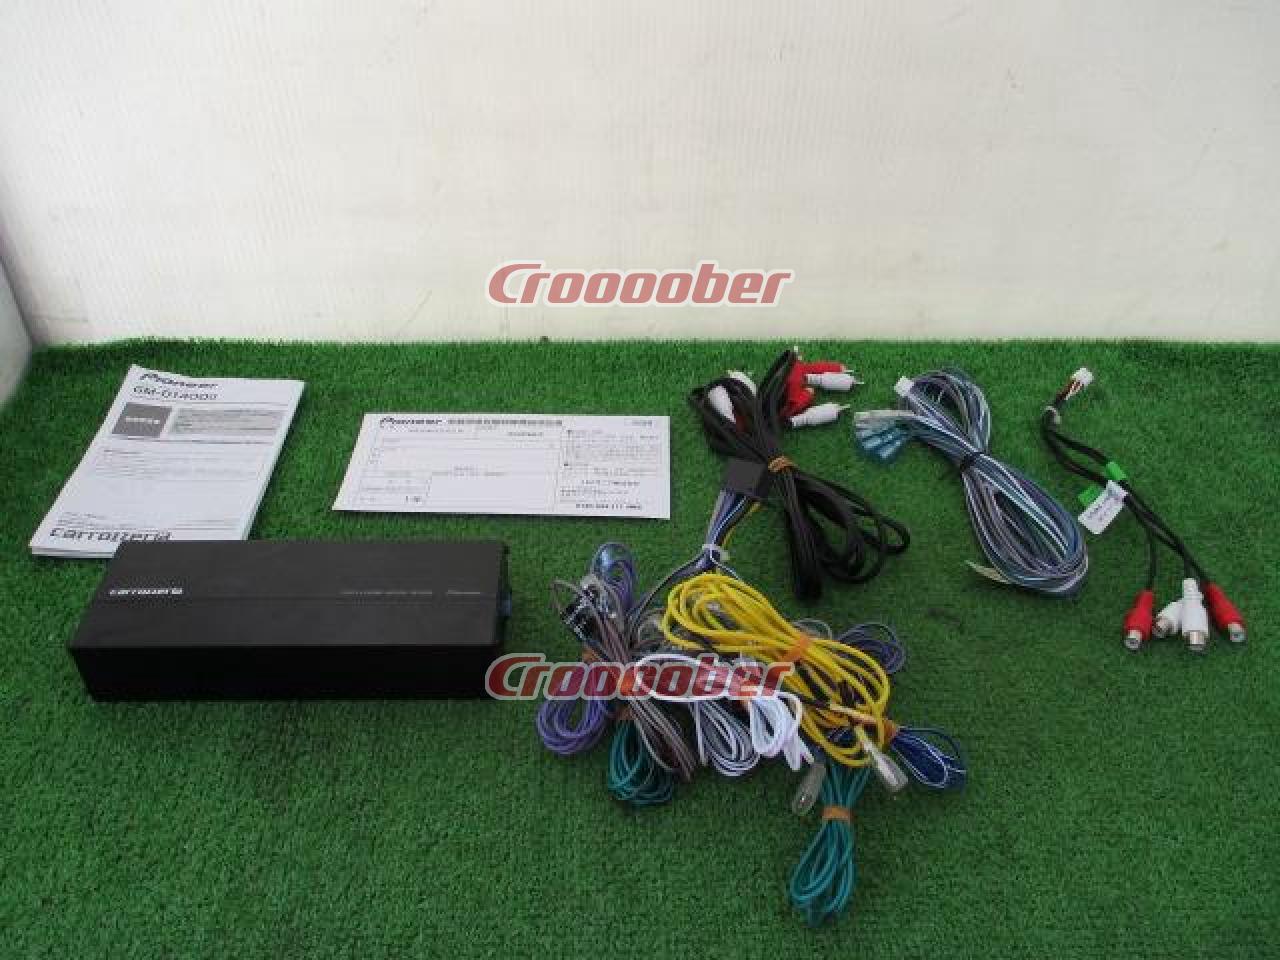 Carrozzeria GM-D1400-2 | Amplifier | Croooober